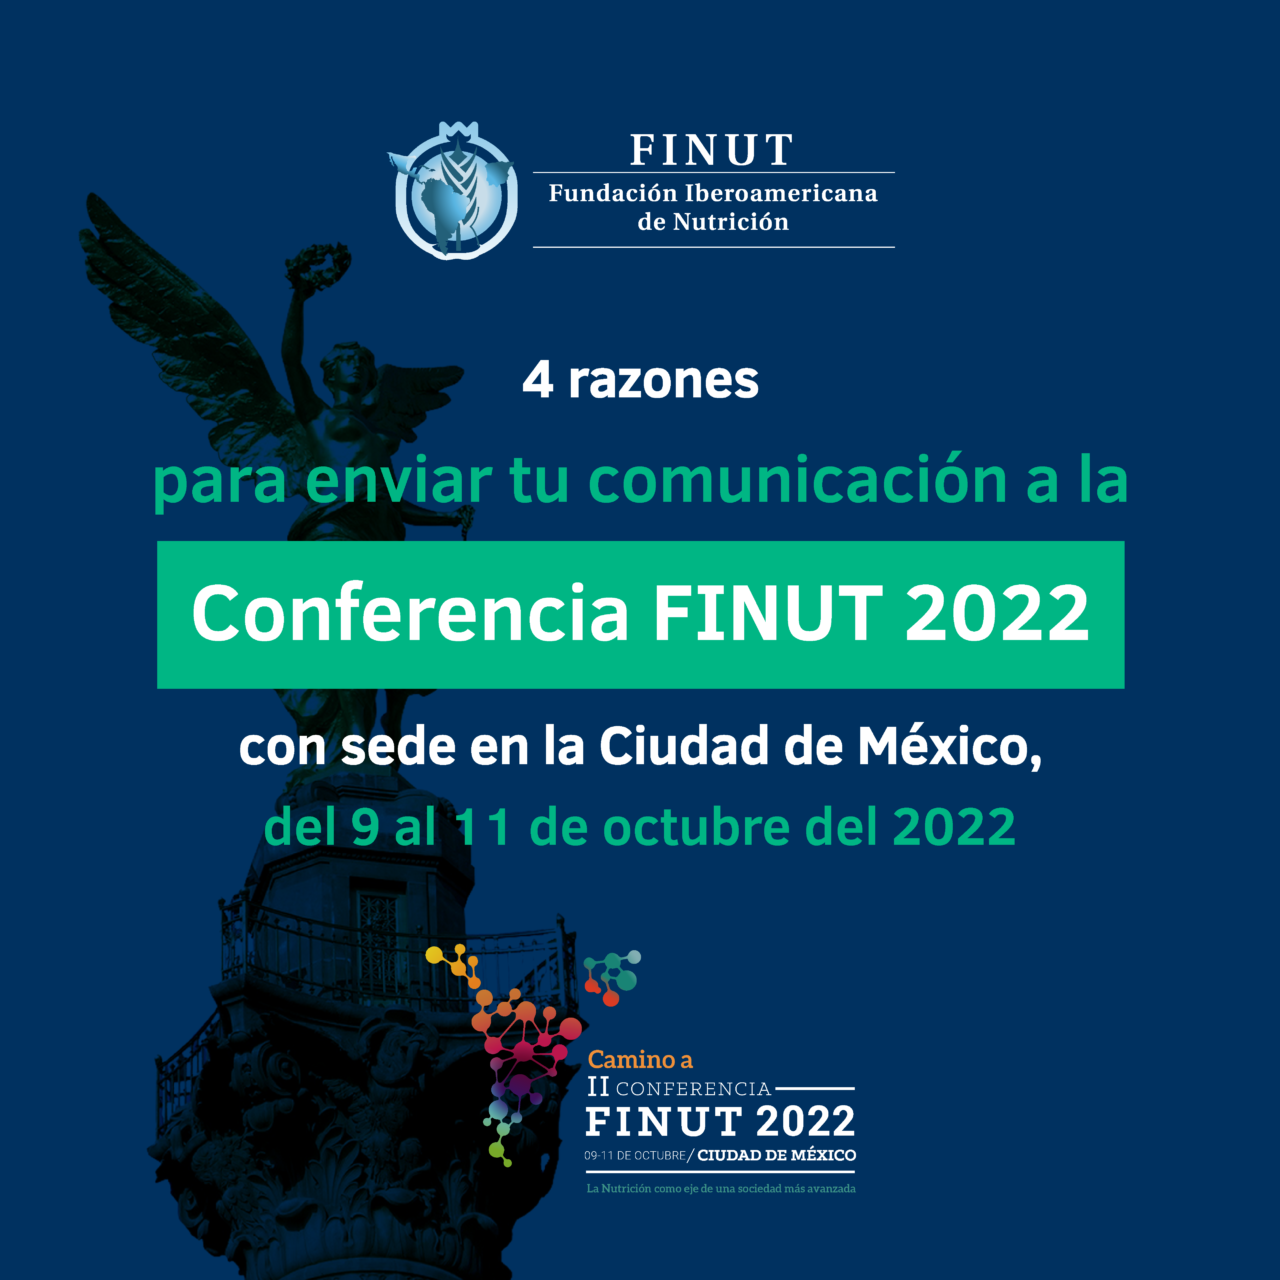 Invitación a participar y enviar trabajos científicos a la conferencia  FINUT 2022 - Fundación Iberoamericana de Nutrición